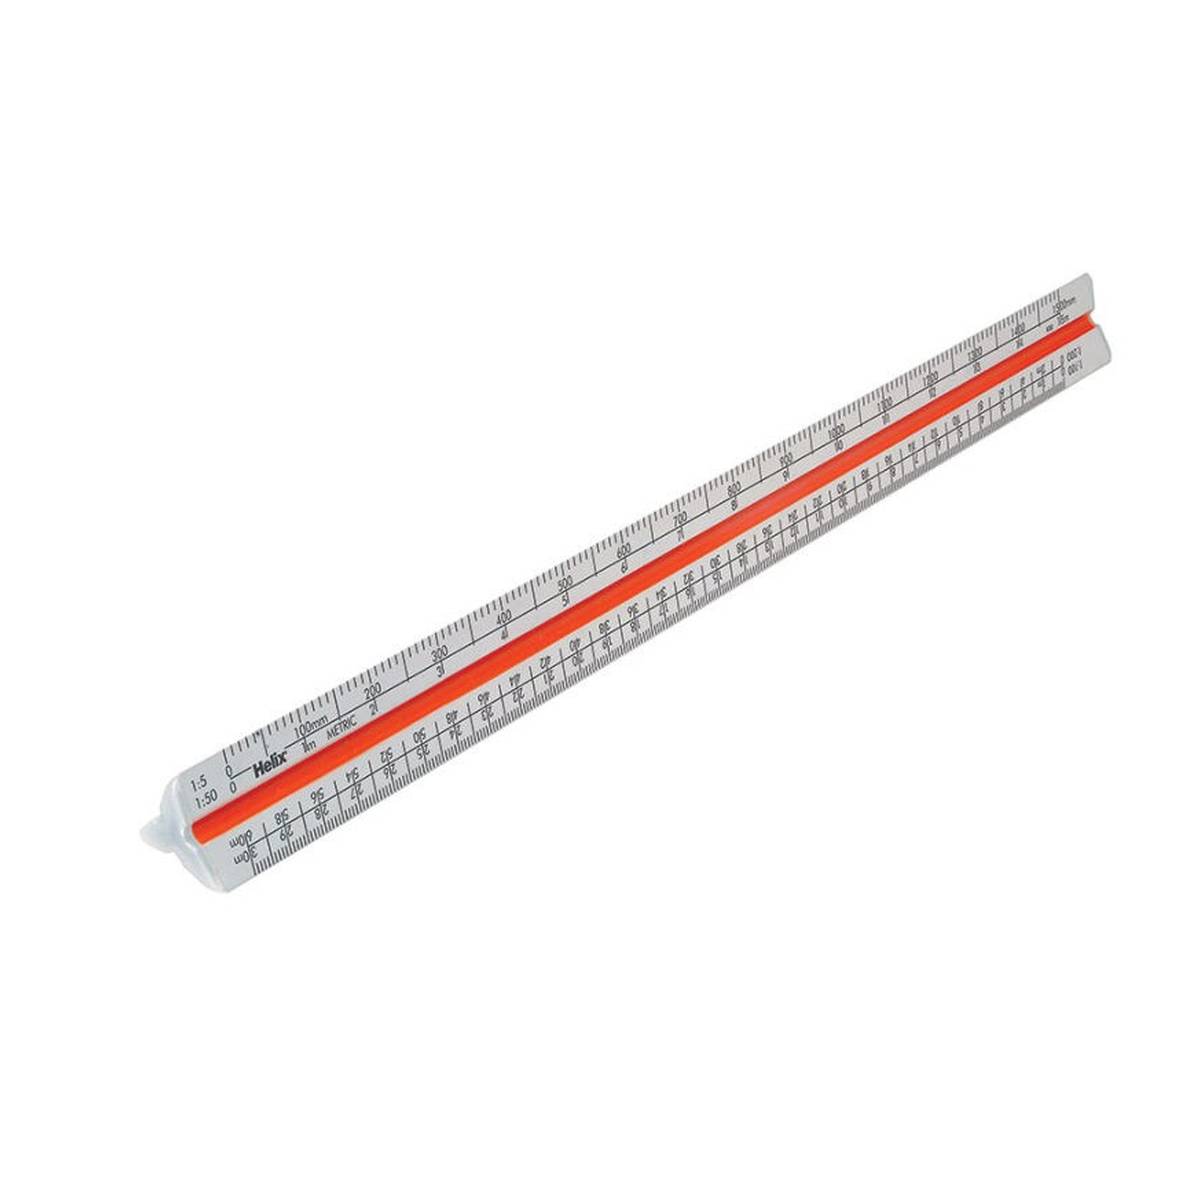 Helix Aluminium Triangular Scale Ruler 30cm